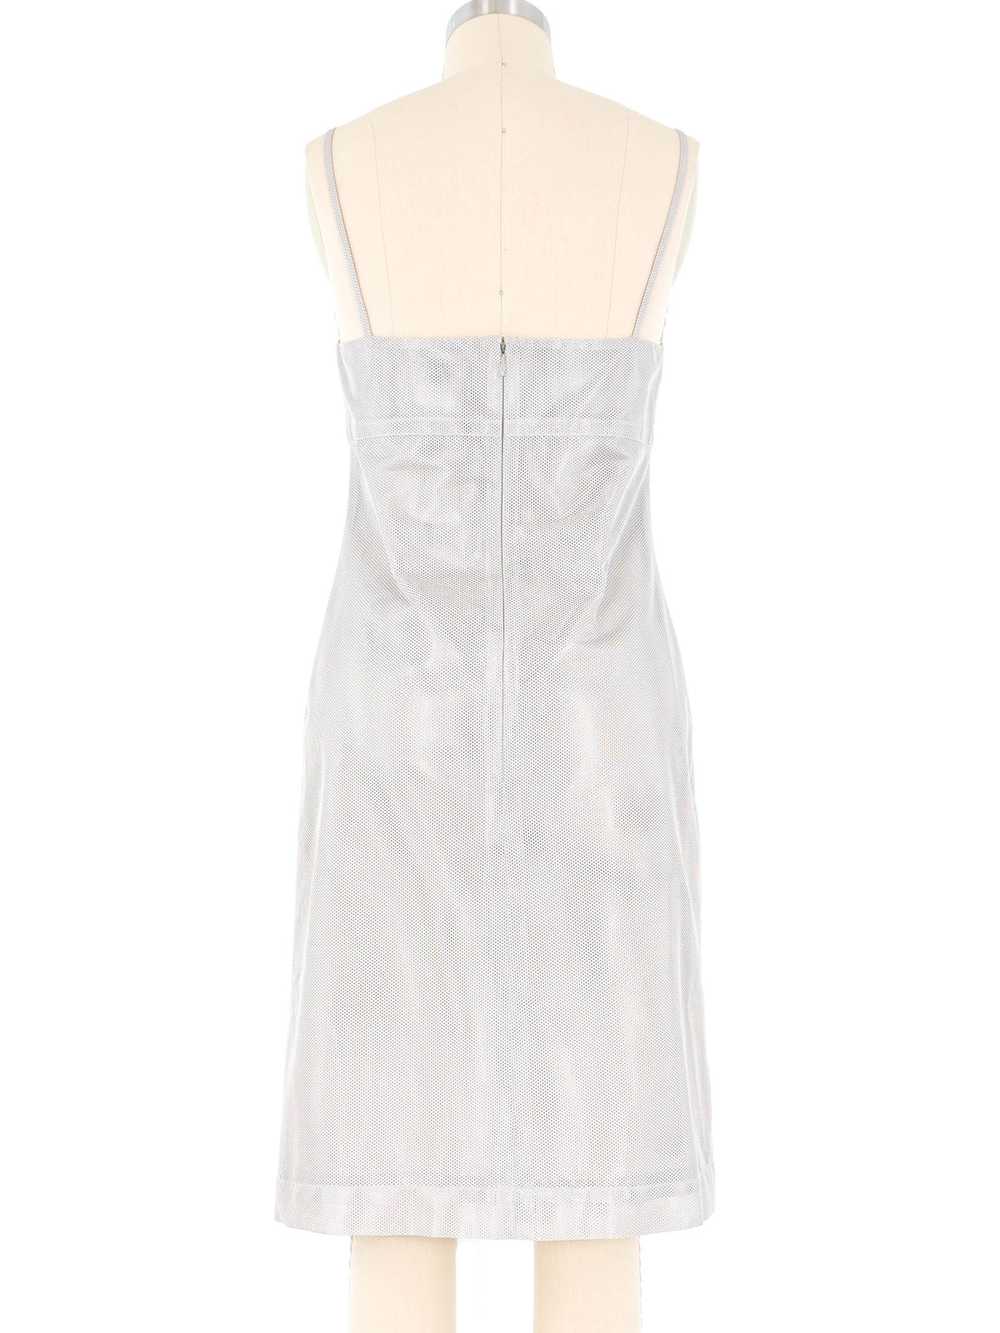 Chanel Silver Mesh Tank Dress - image 5